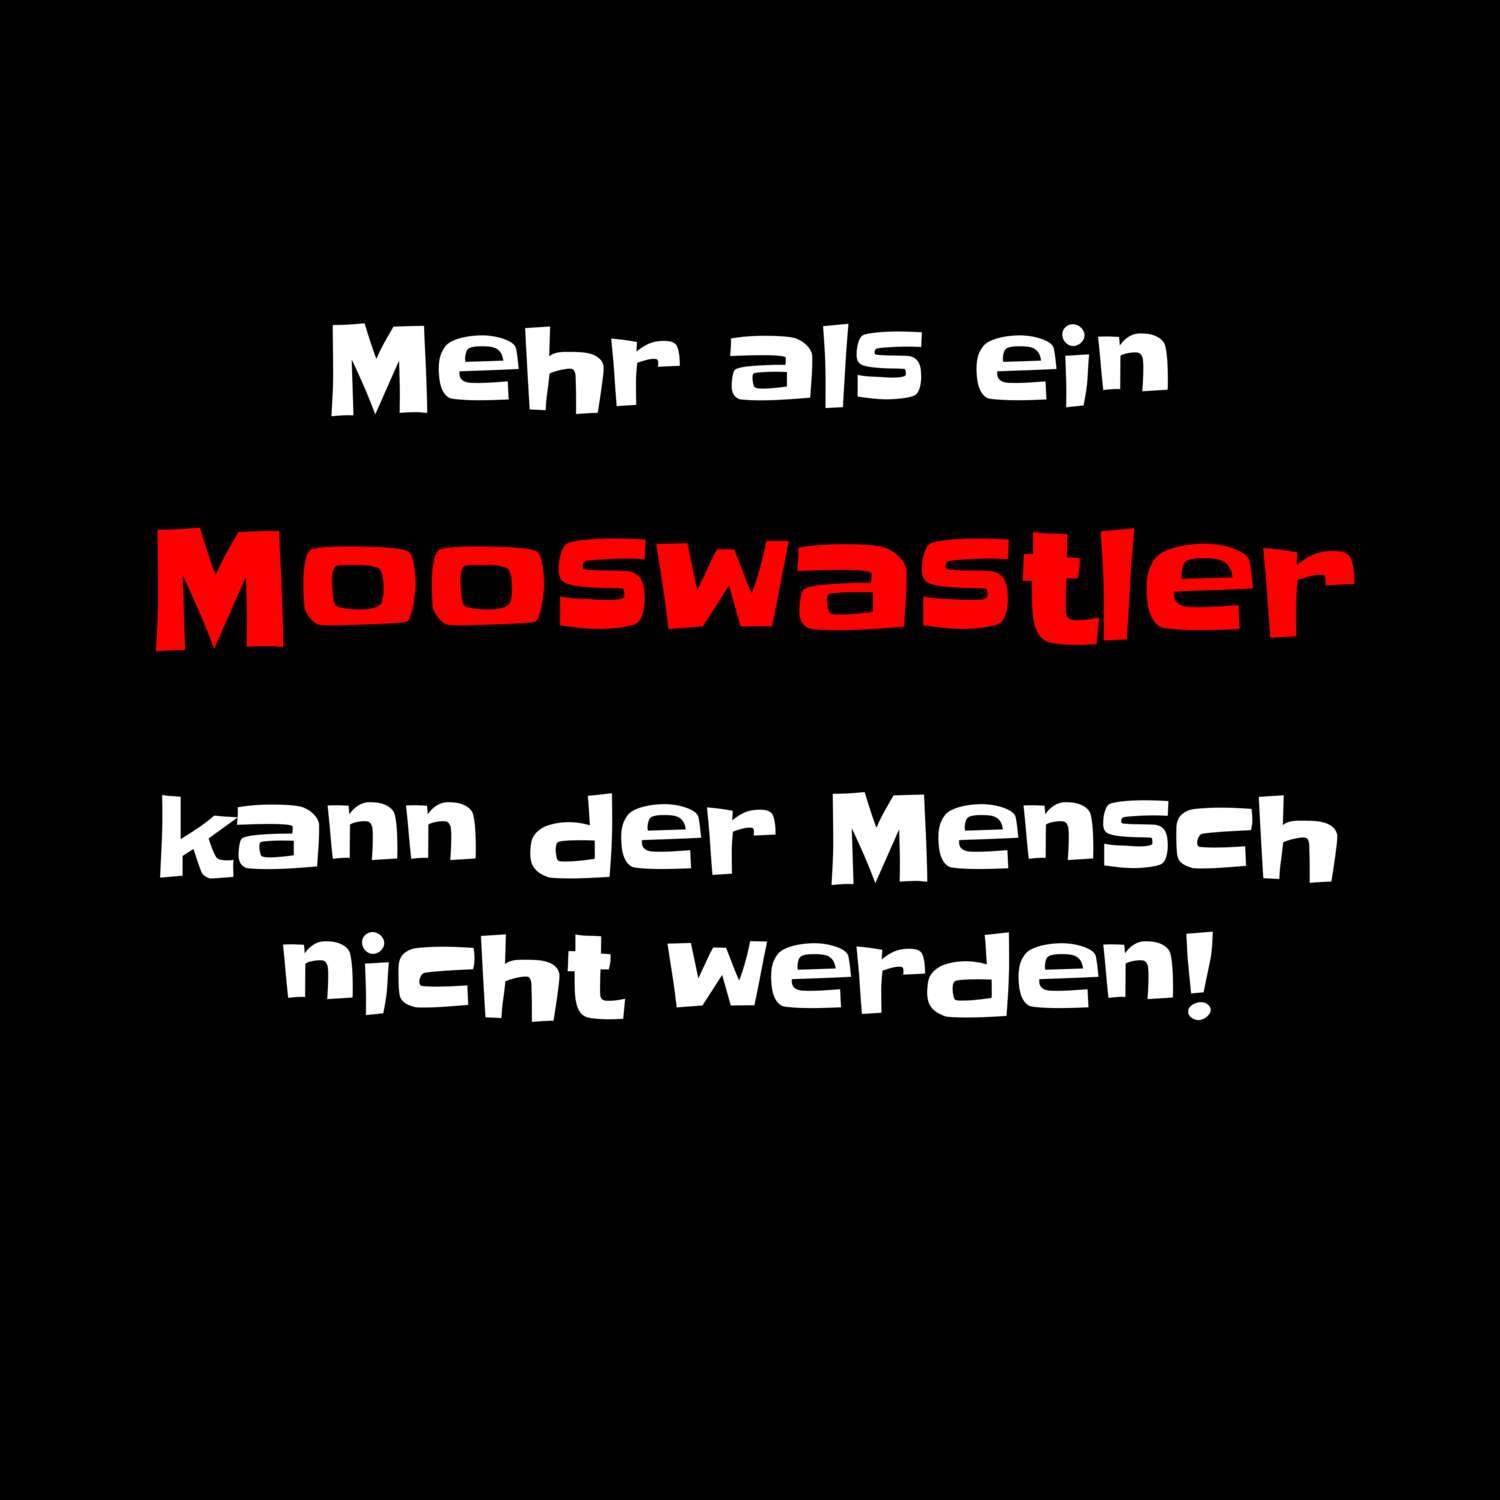 Mooswastl T-Shirt »Mehr als ein«